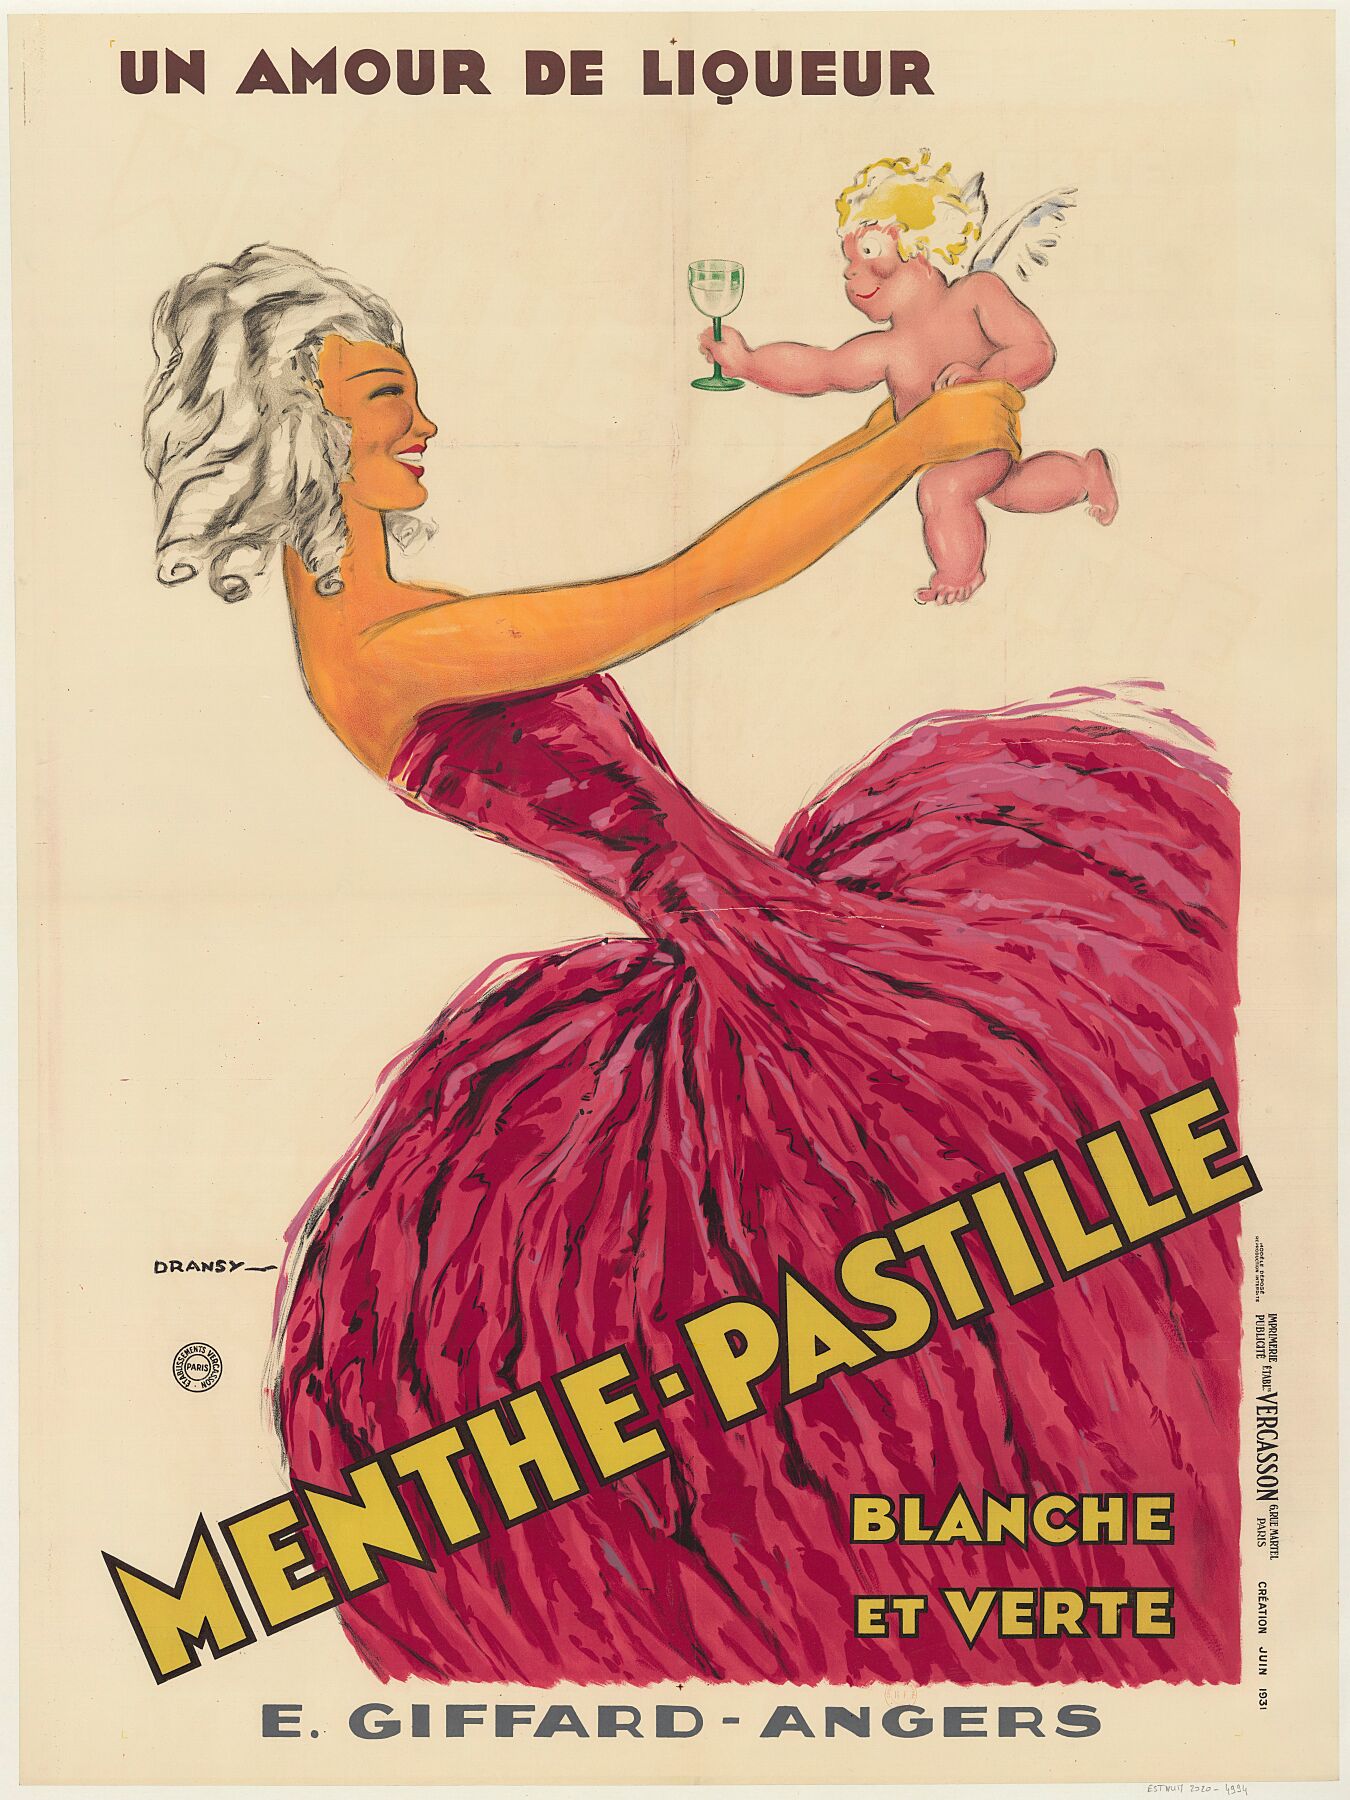 Dransy - Un Amour de Liqueur. Menthe-Pastille, Blanche et Verte - 1931